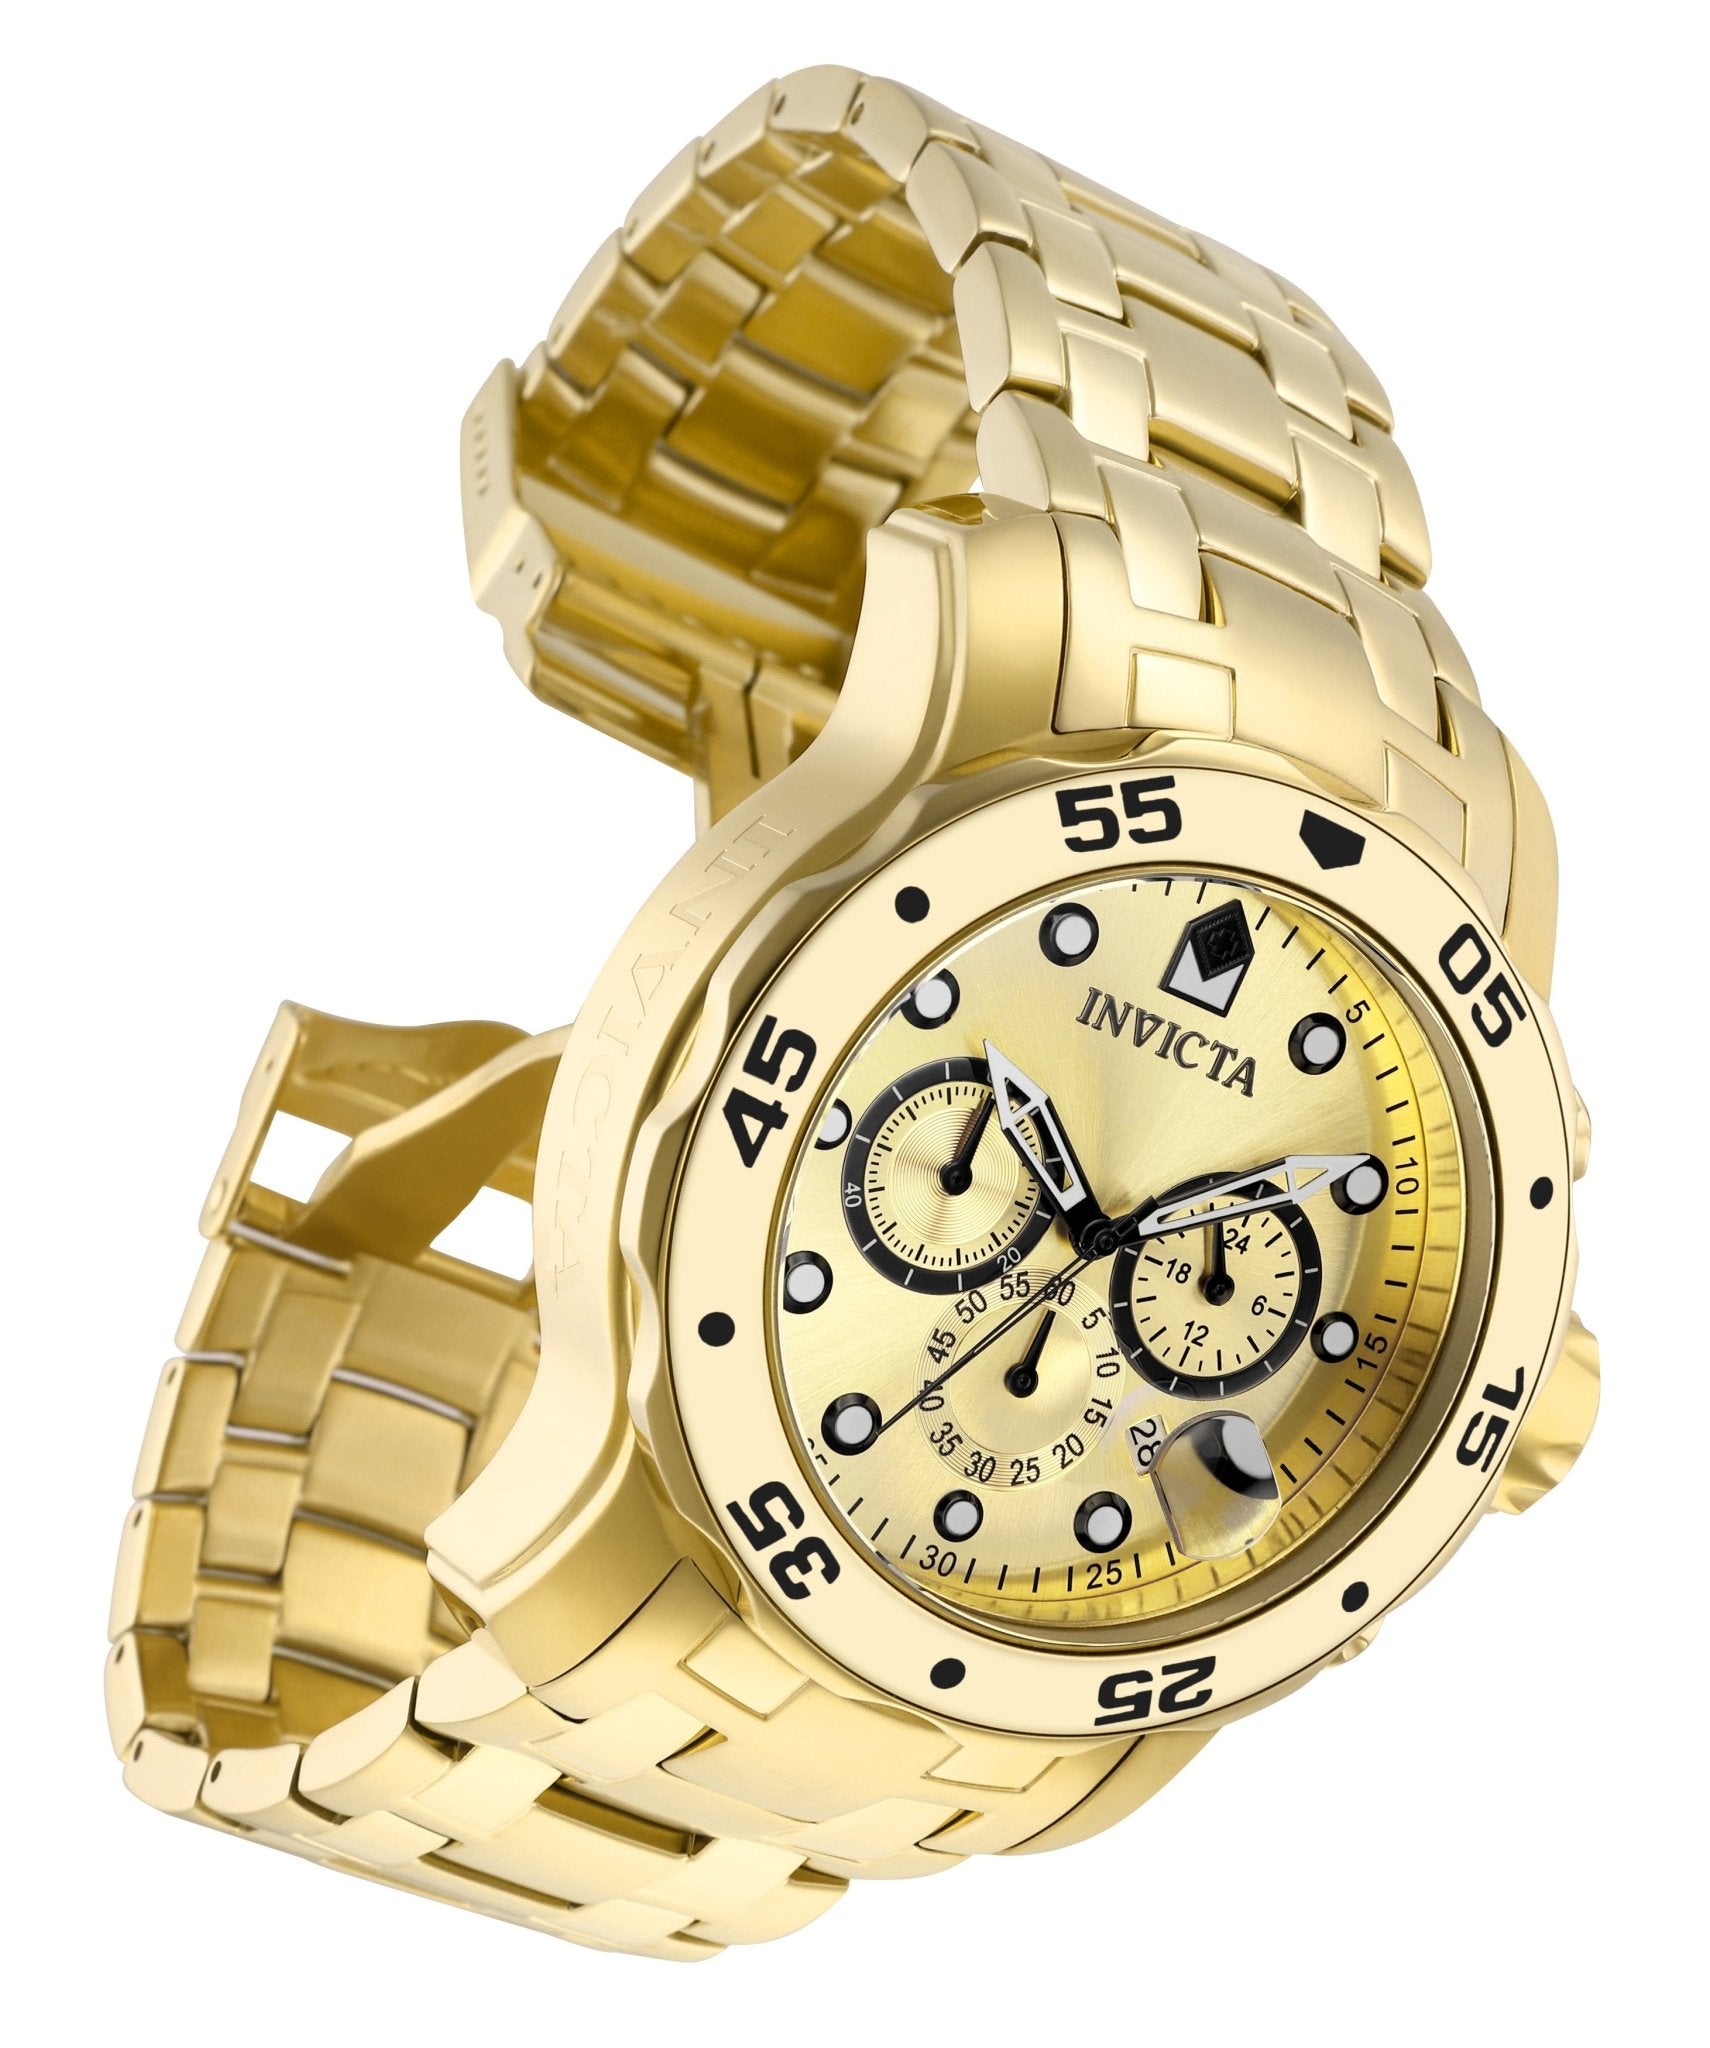 Invicta Pro Diver SCUBA 0074 Men's Quartz Watch in yellow gold finish